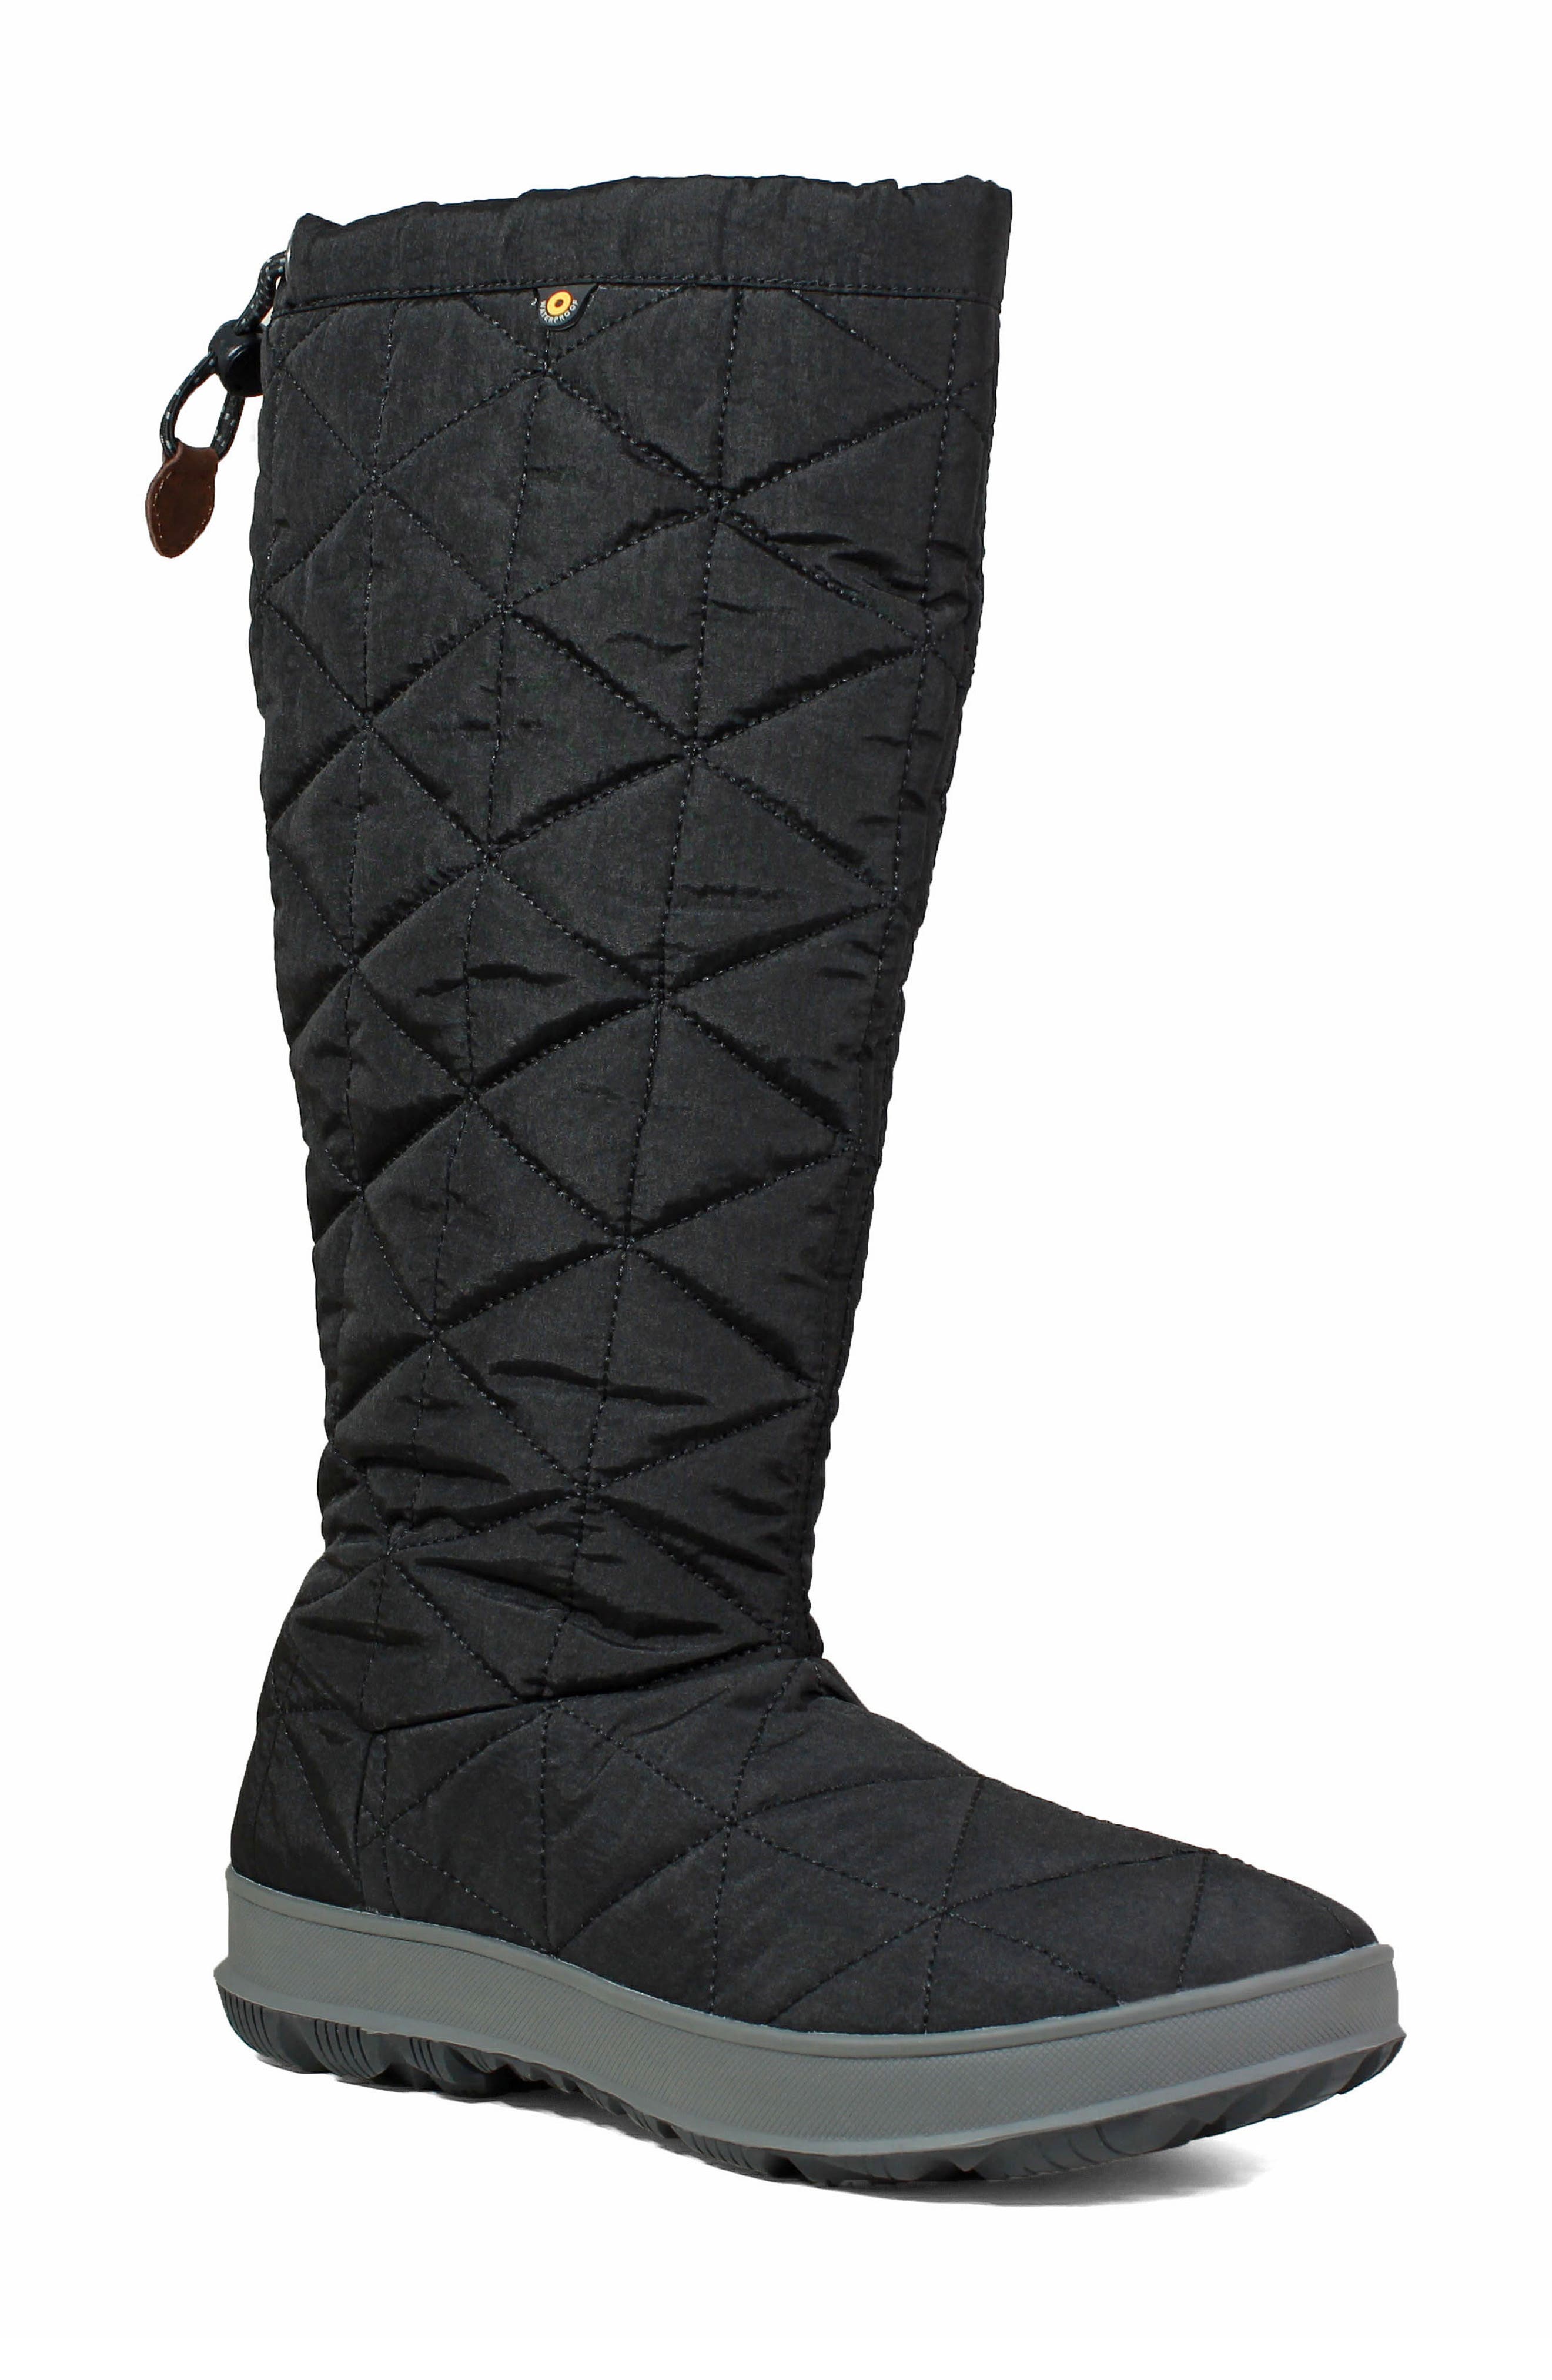 Women's Bogs Boots | Nordstrom